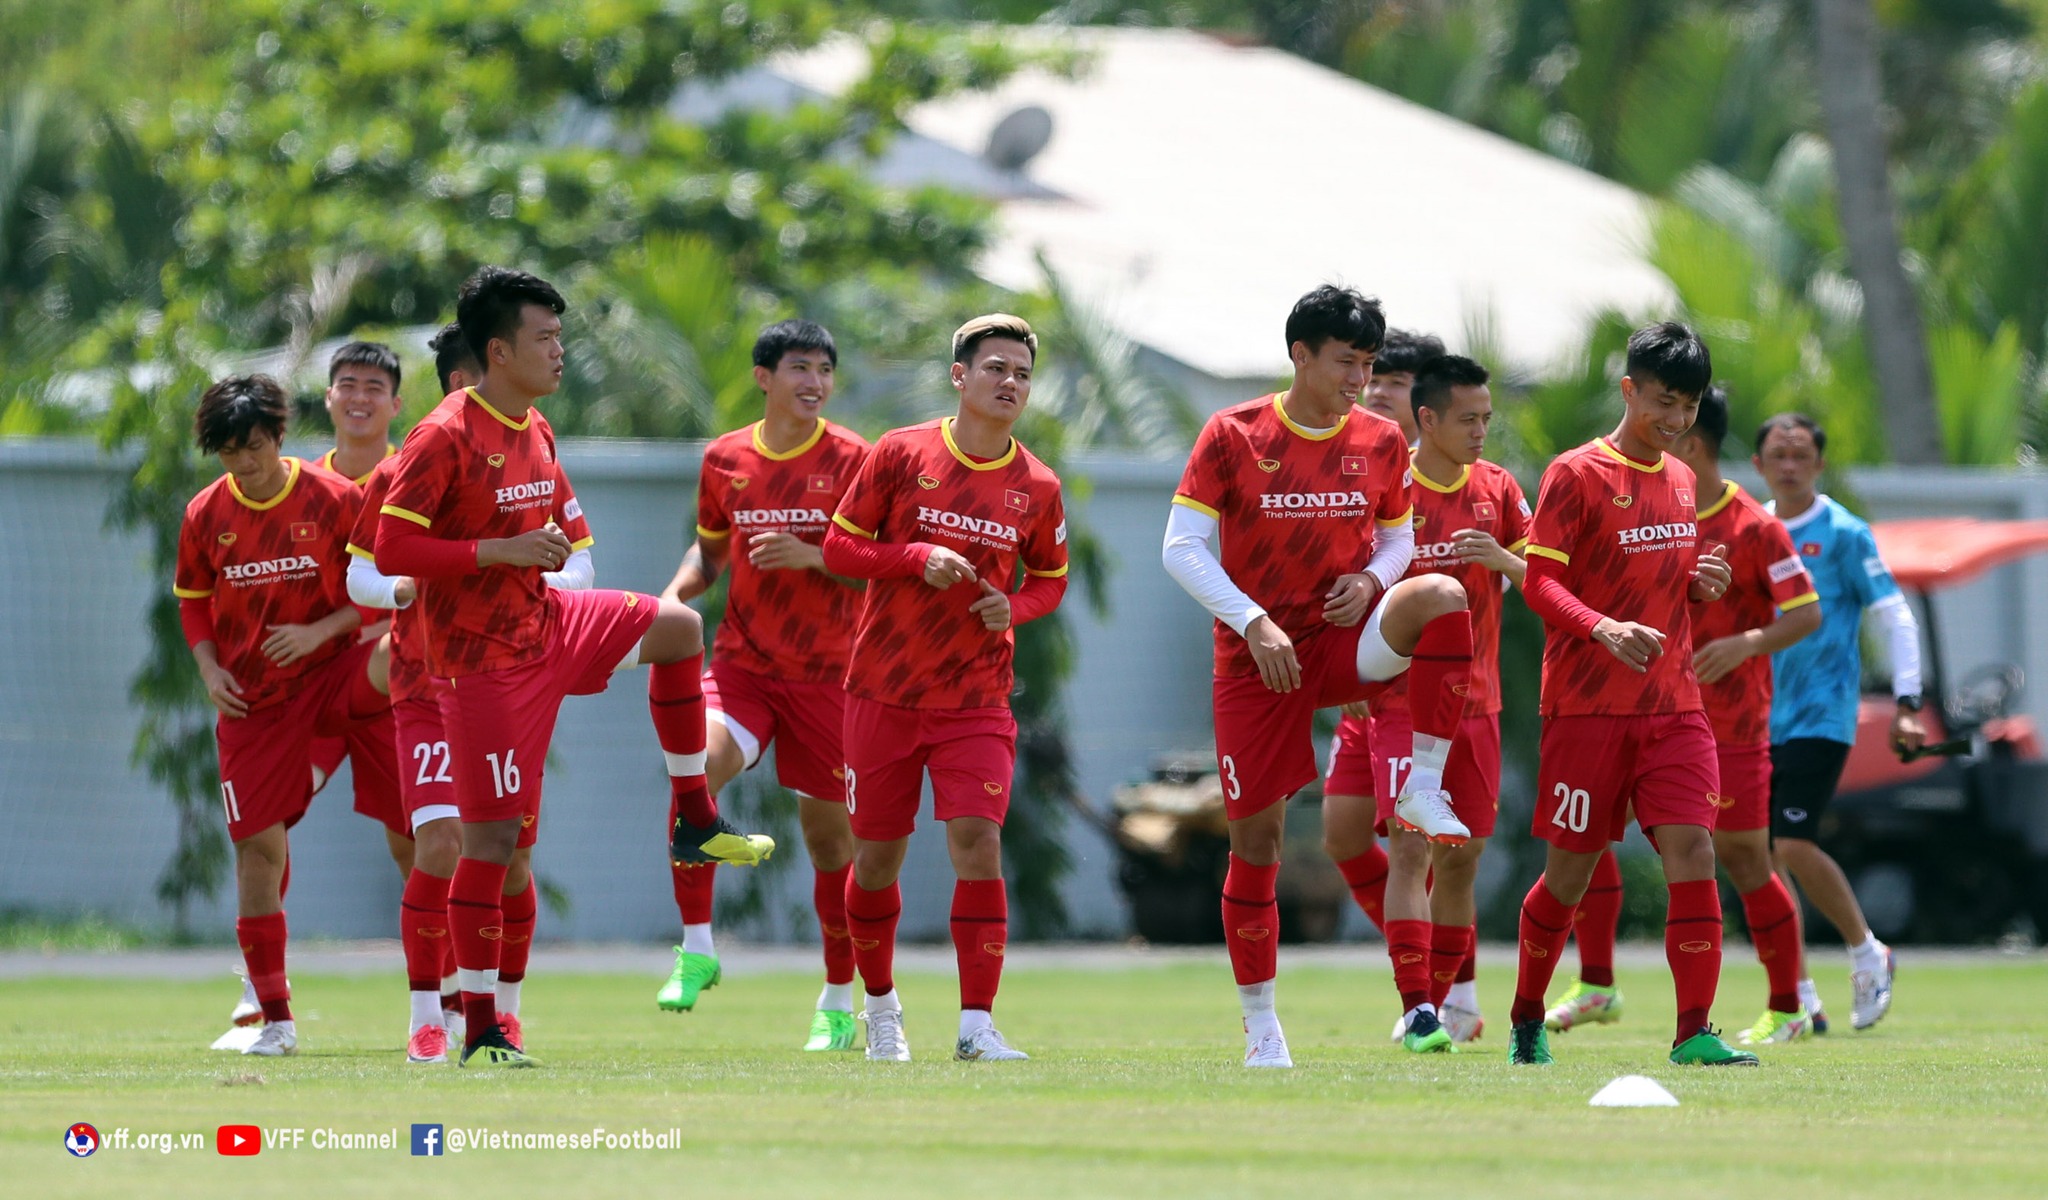 Nhiều khả năng các trụ cột sẽ trở lại trong đội hình xuất phát của đội tuyển Việt Nam ở trận đấu với đội tuyển Ấn Độ. Ảnh: VFF